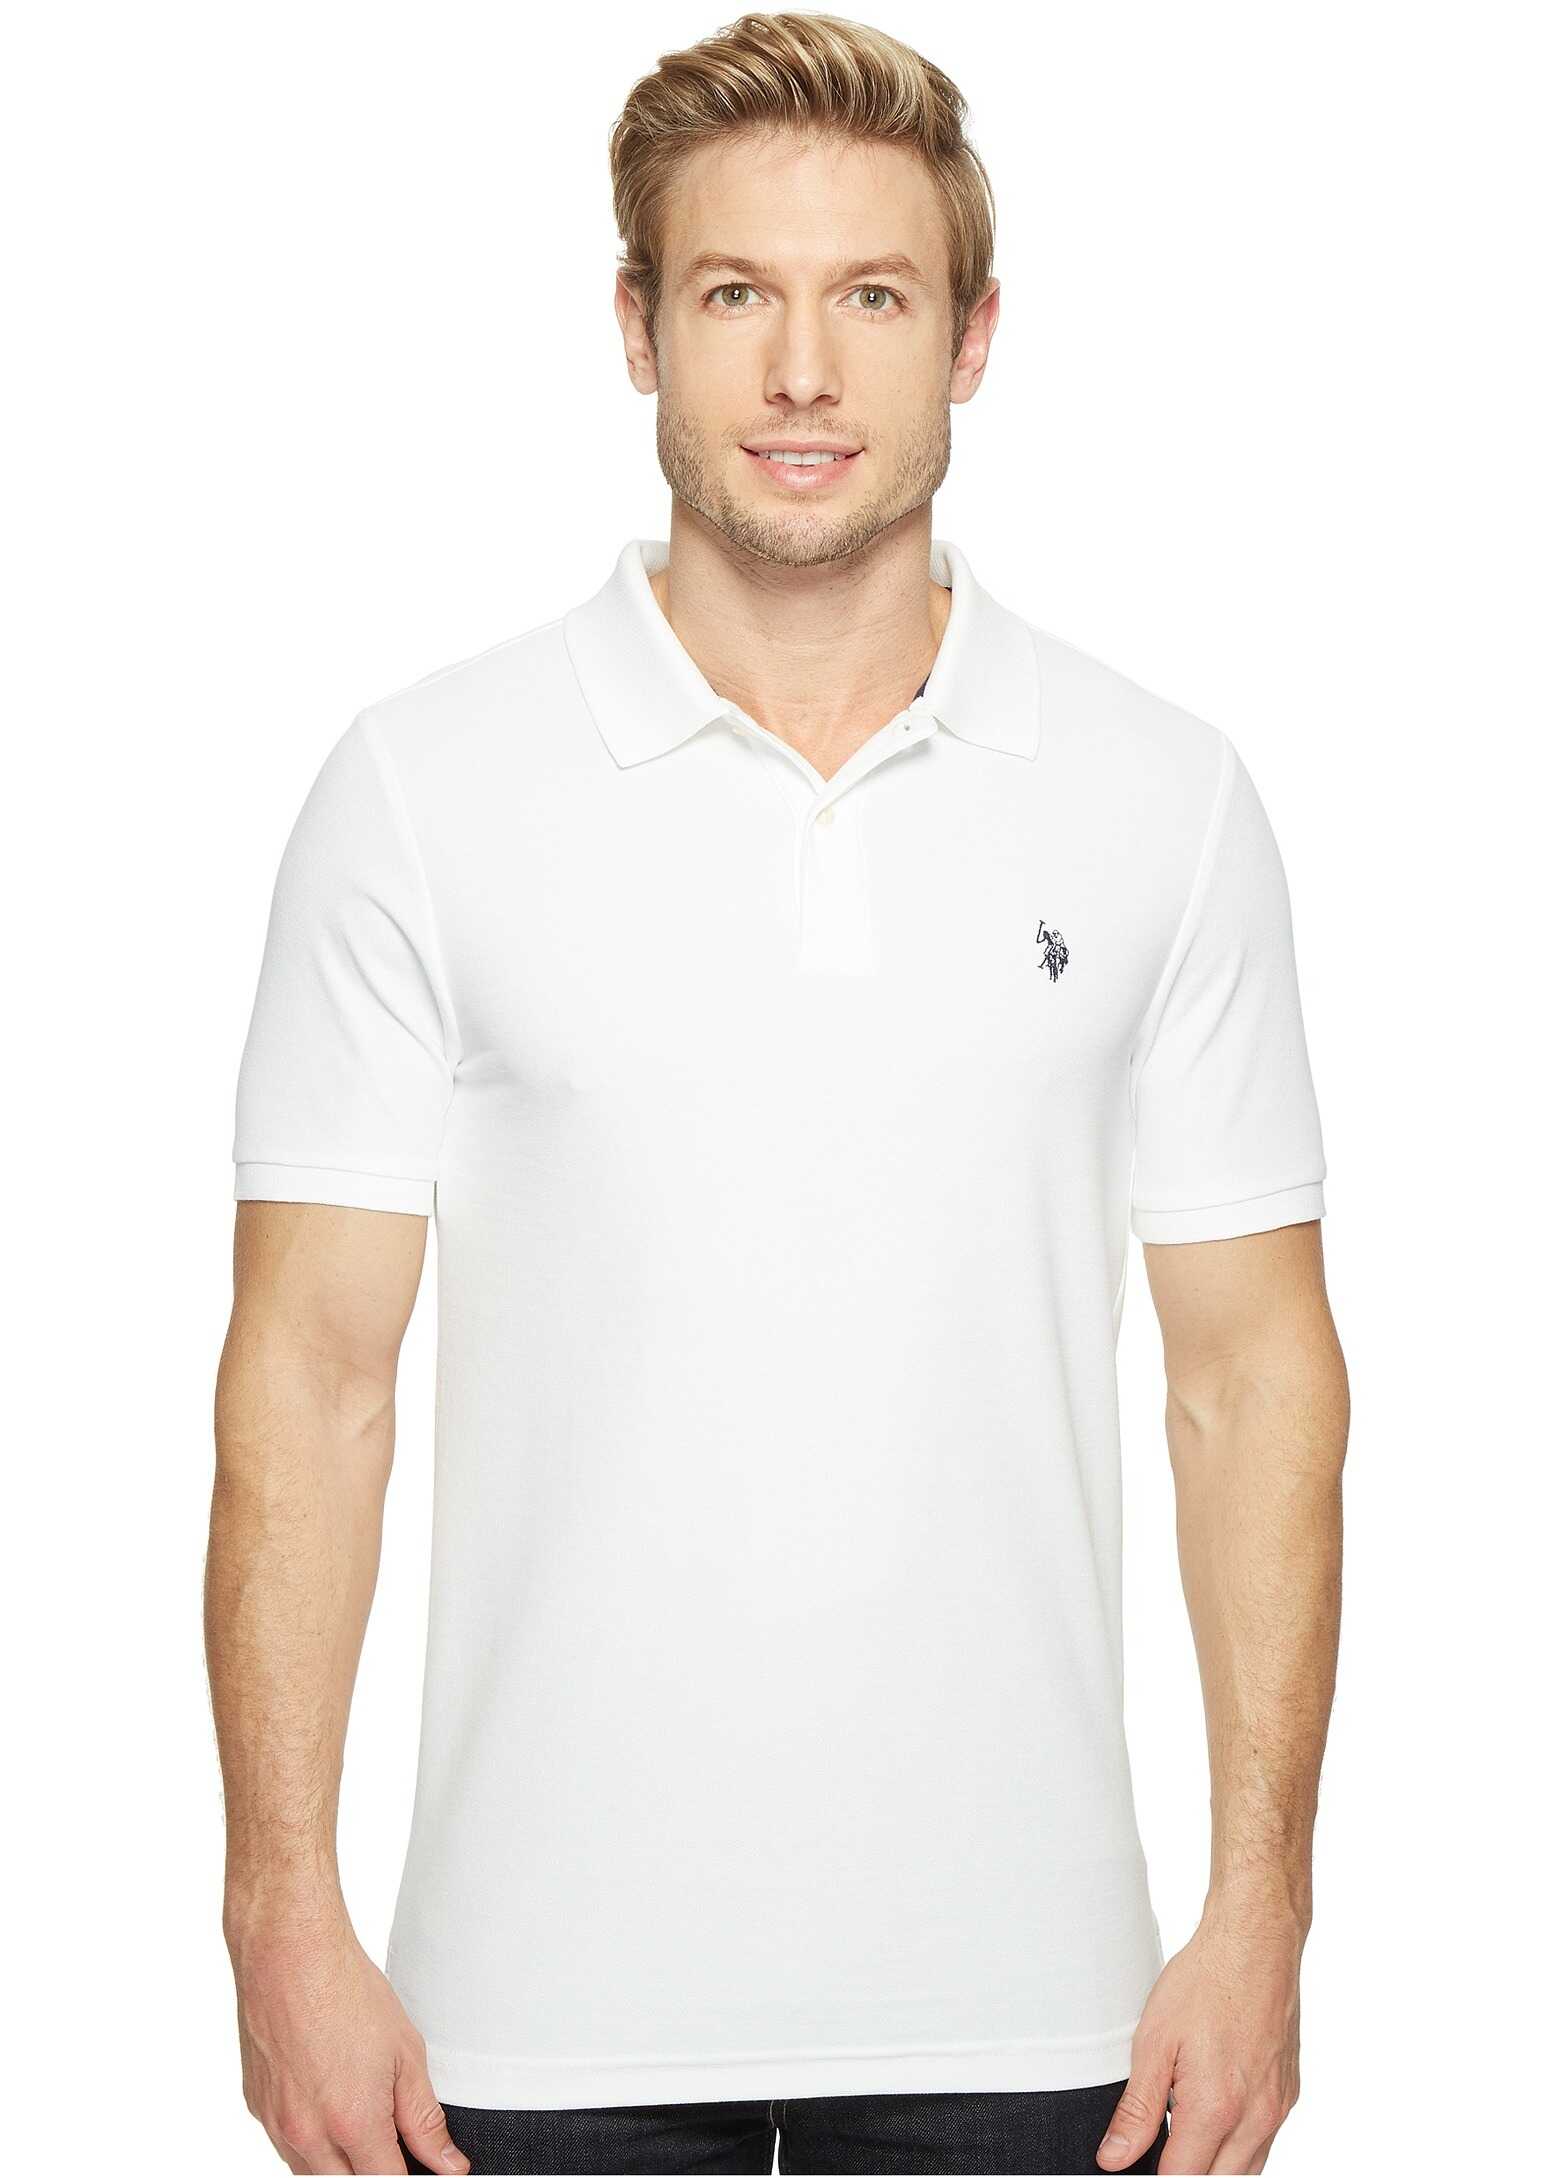 U.S. POLO ASSN. Ultimate Pique Polo Shirt White